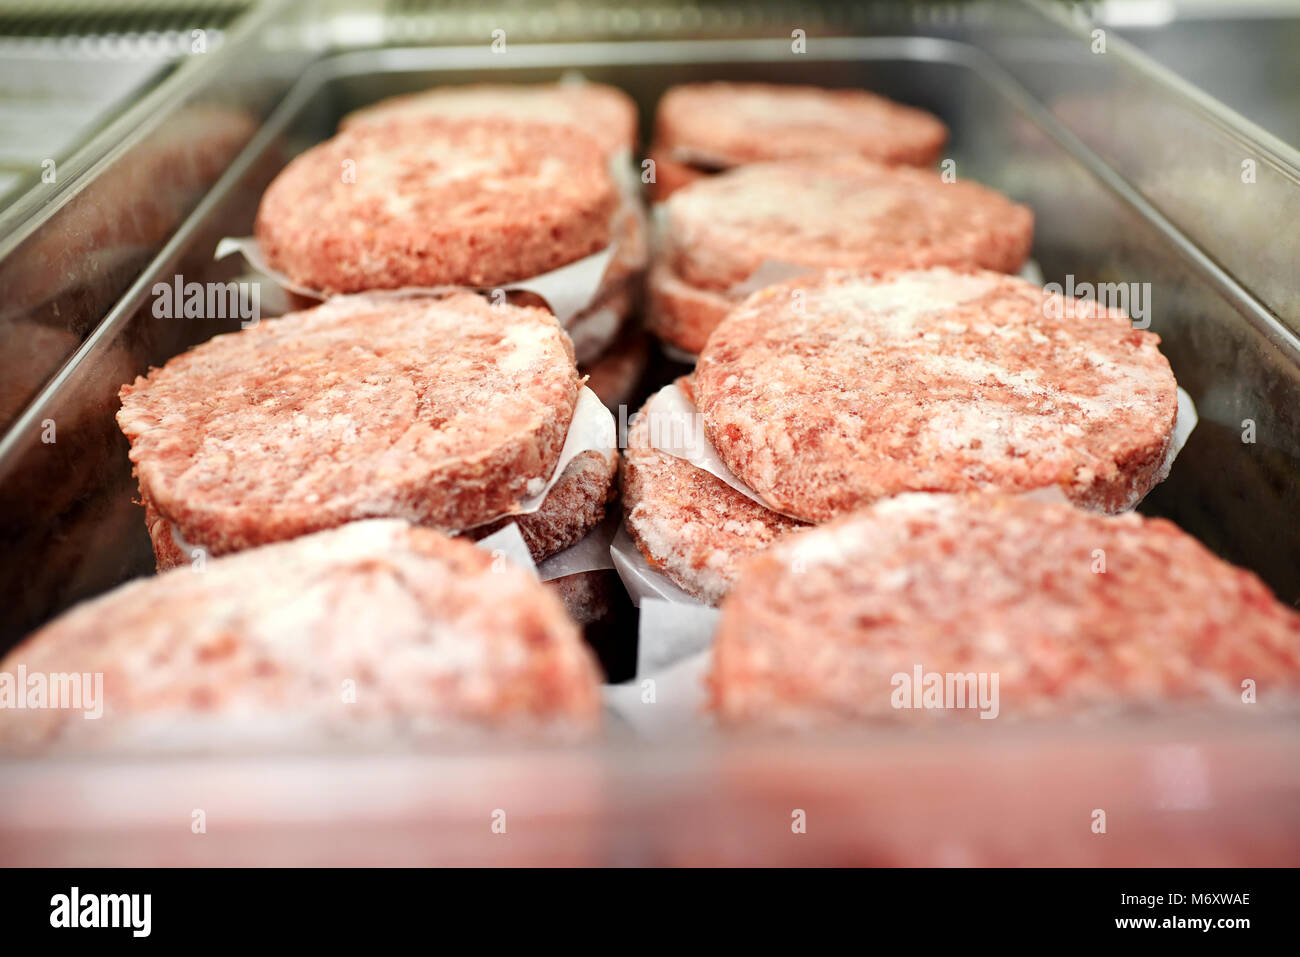 Vassoio metallico di massa congelata hamburger di manzo polpette separate da carta oleata in un ristorante o una macelleria Foto Stock